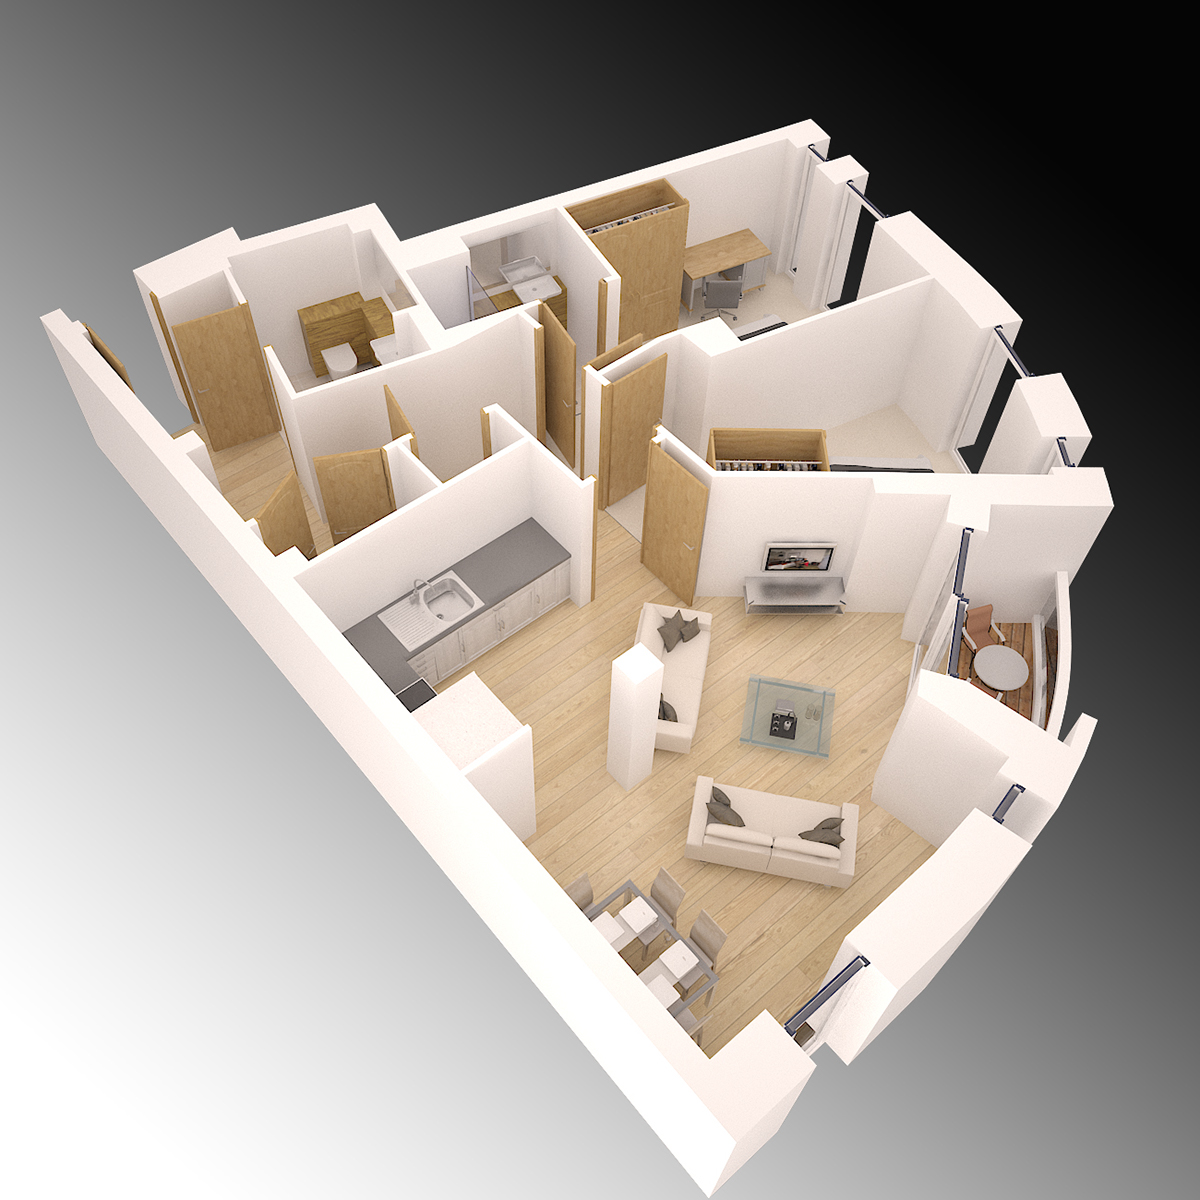 Render rendering Interior 3dmodel 3dmodeling 3dart dgitalmodel Perspective Isometric 3drender